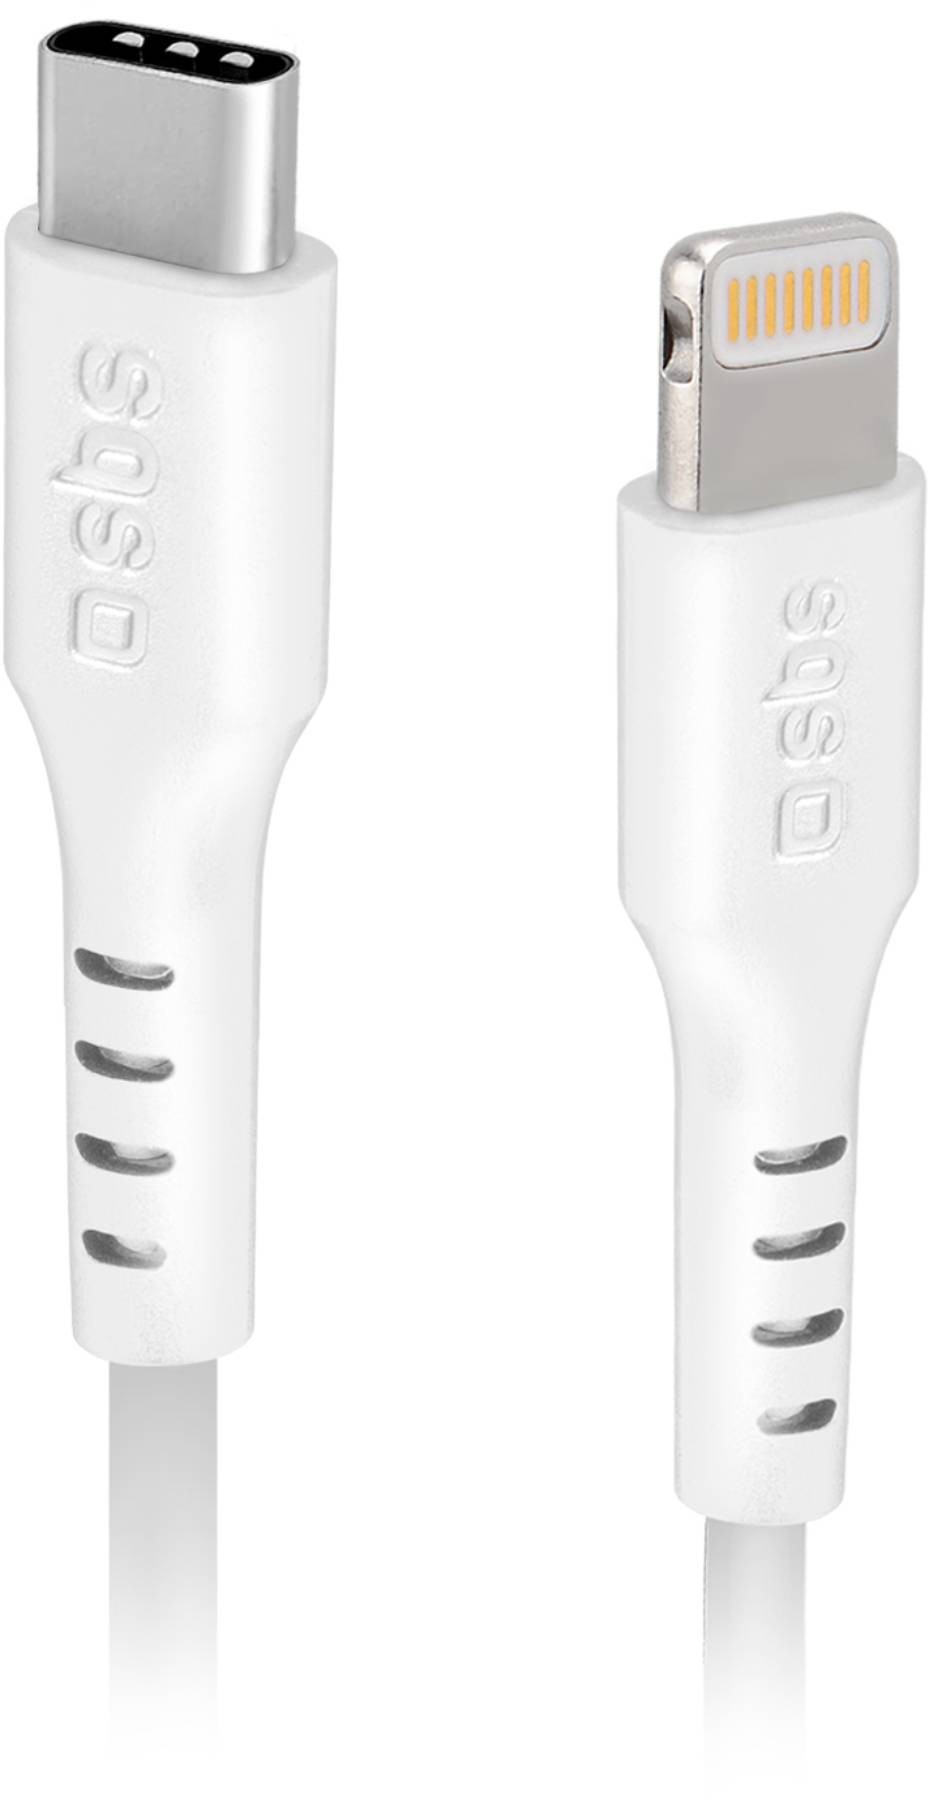 SBS Câble USB  données et recharge Lightning – Type C de 2 mètres de long  CABLELIGHTNING-TYPEC